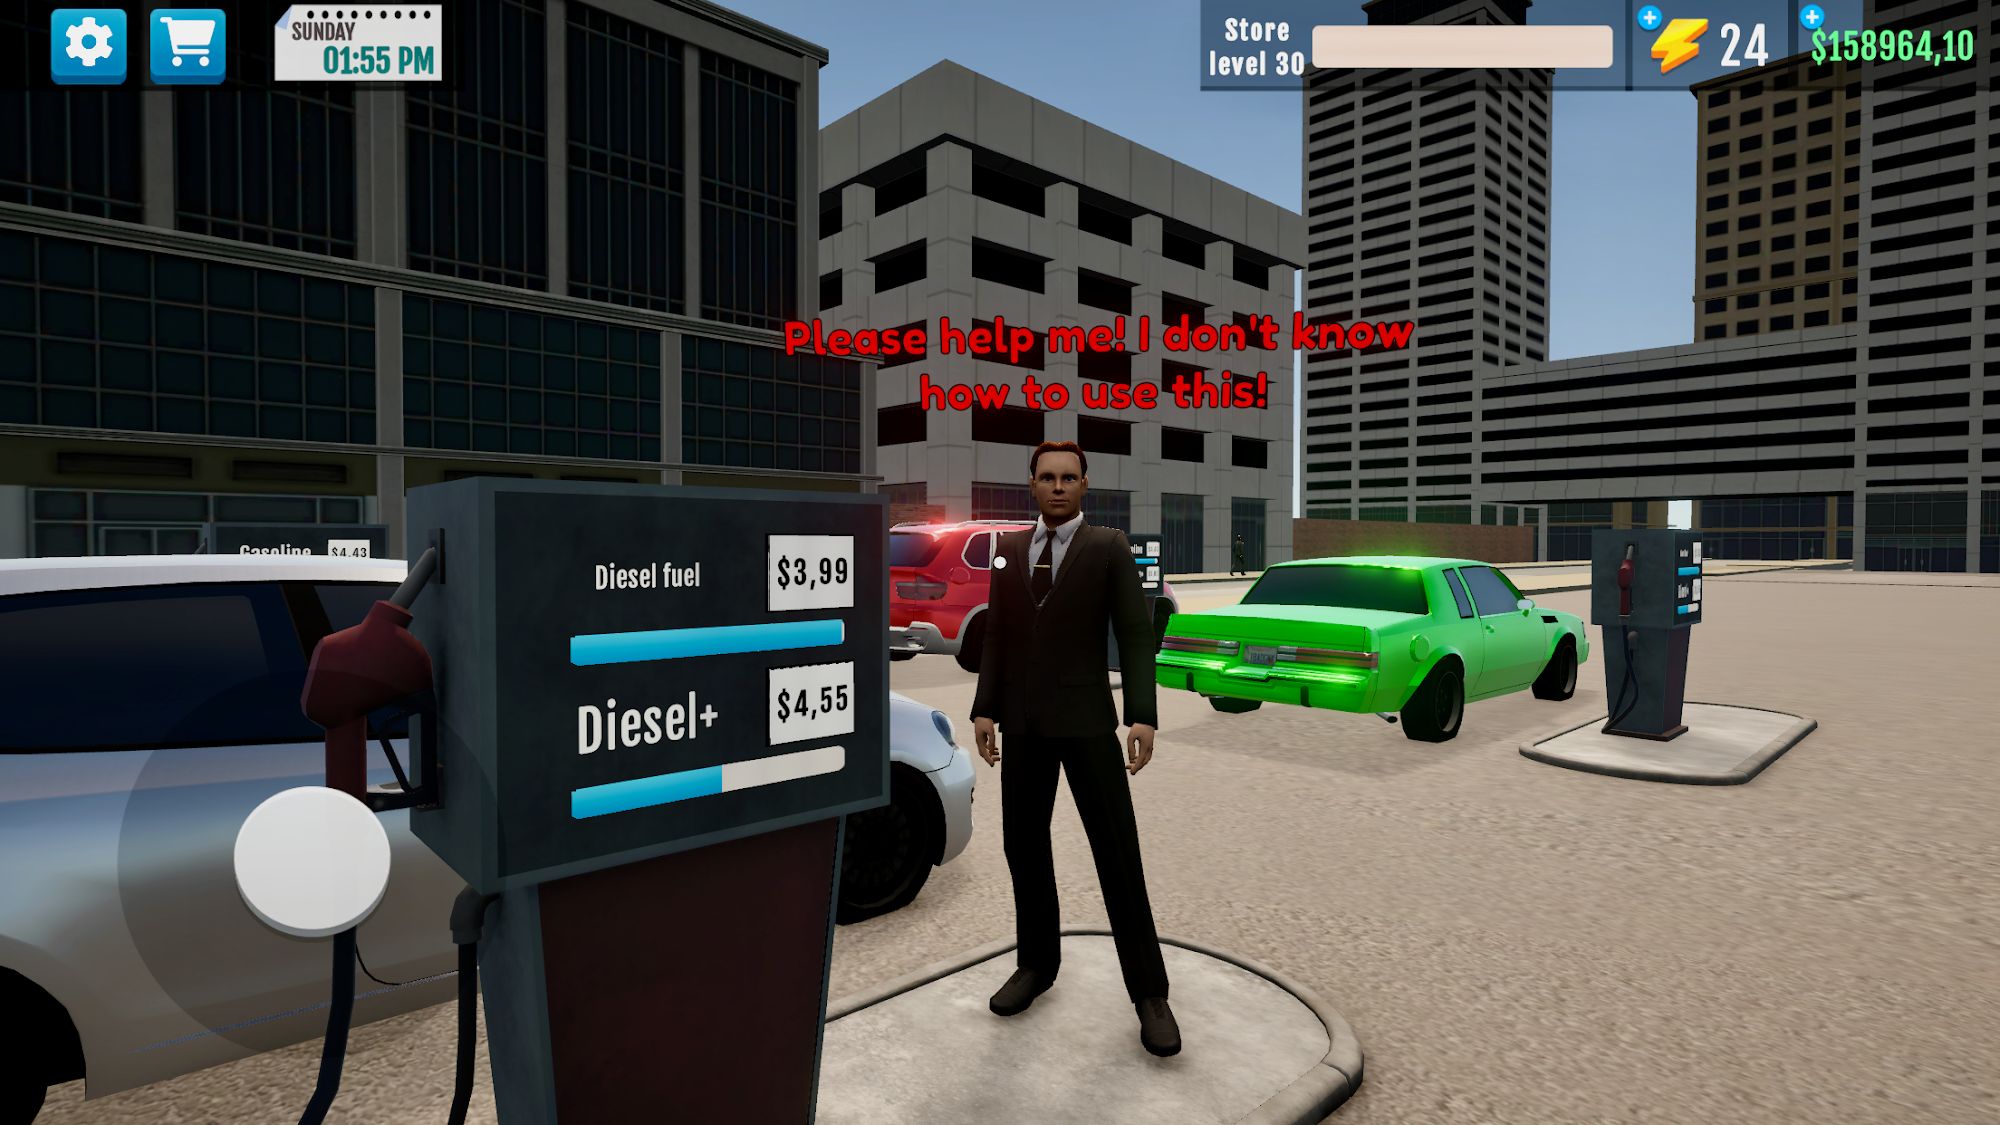 Télécharger City Gas Station Simulator 3D pour Android A.n.d.r.o.i.d. .5...0. .a.n.d. .m.o.r.e gratuit.